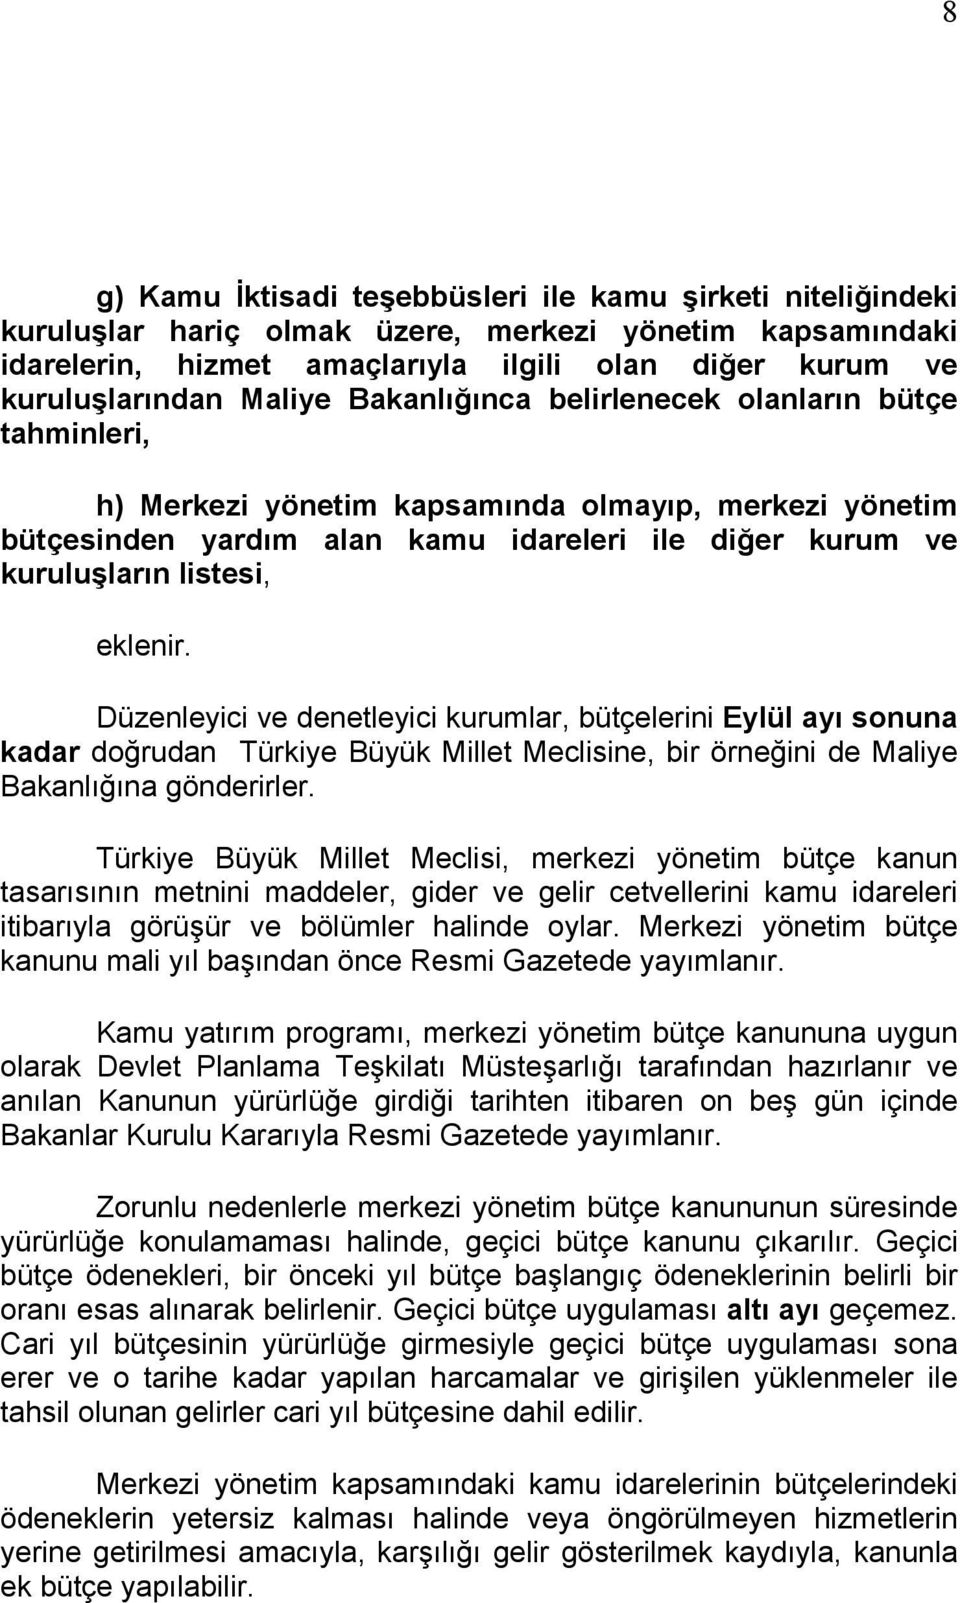 eklenir. Düzenleyici ve denetleyici kurumlar, bütçelerini Eylül ayı sonuna kadar doğrudan Türkiye Büyük Millet Meclisine, bir örneğini de Maliye Bakanlığına gönderirler.